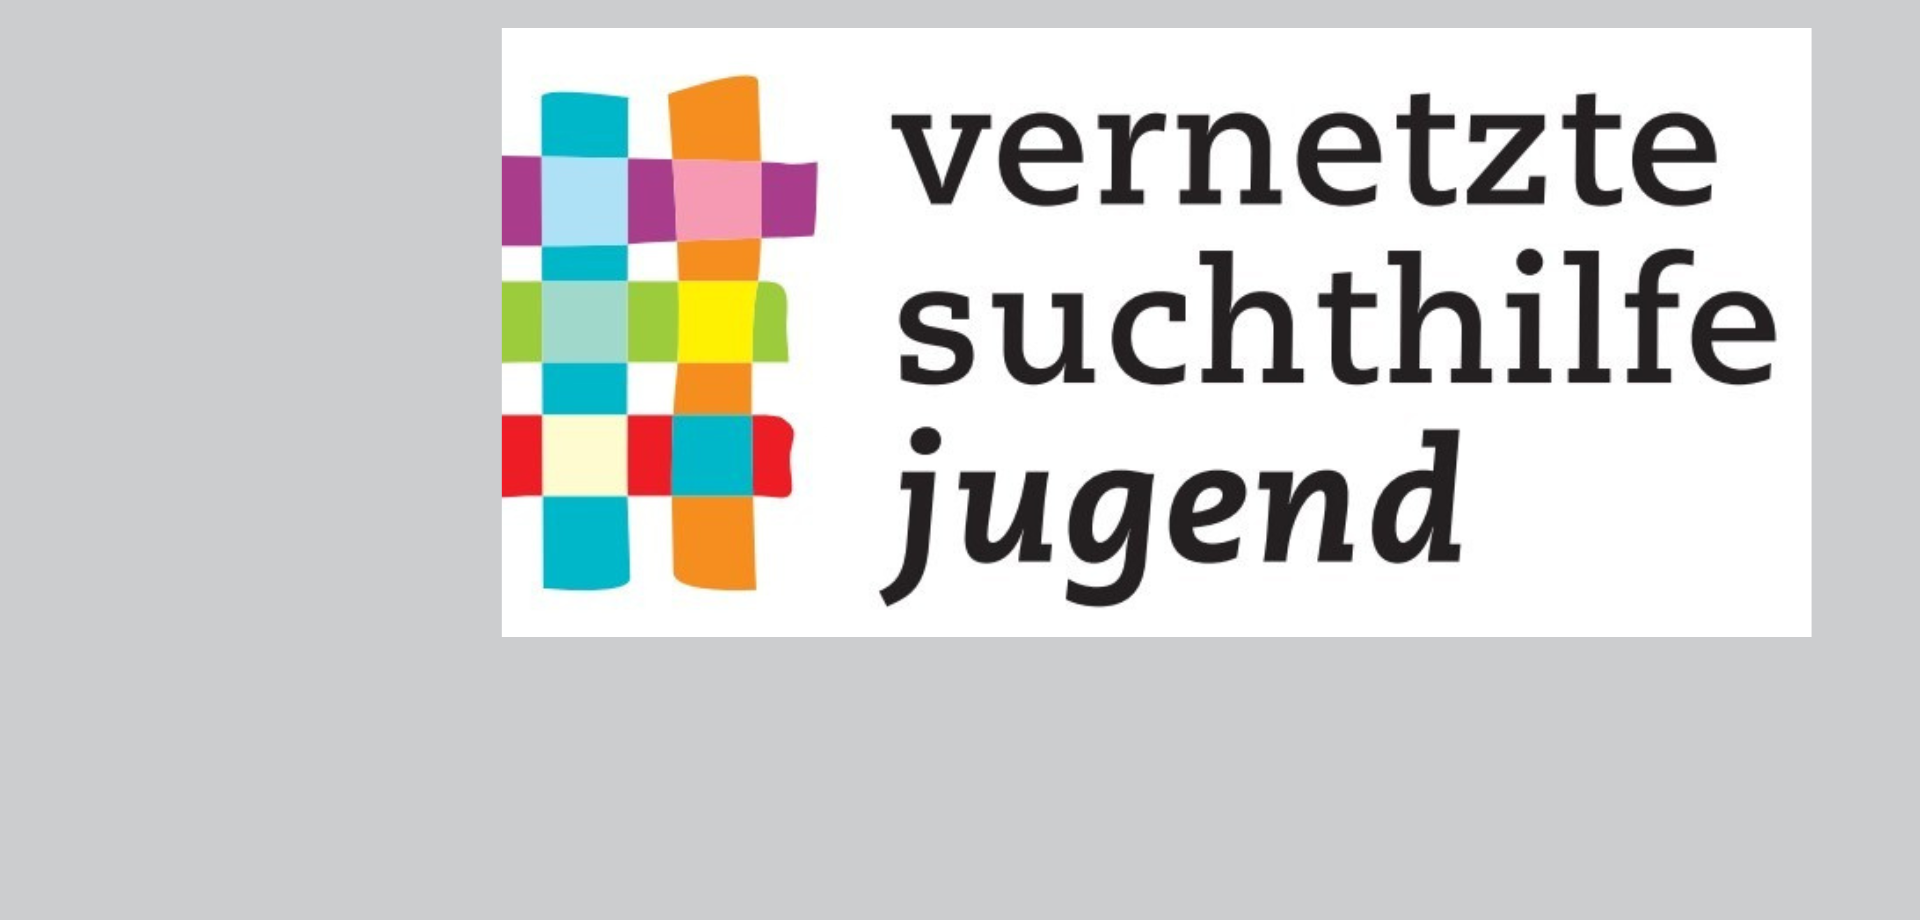 Das Bild zeigt das Logo der Vernetzten Suchthilfe Jugend